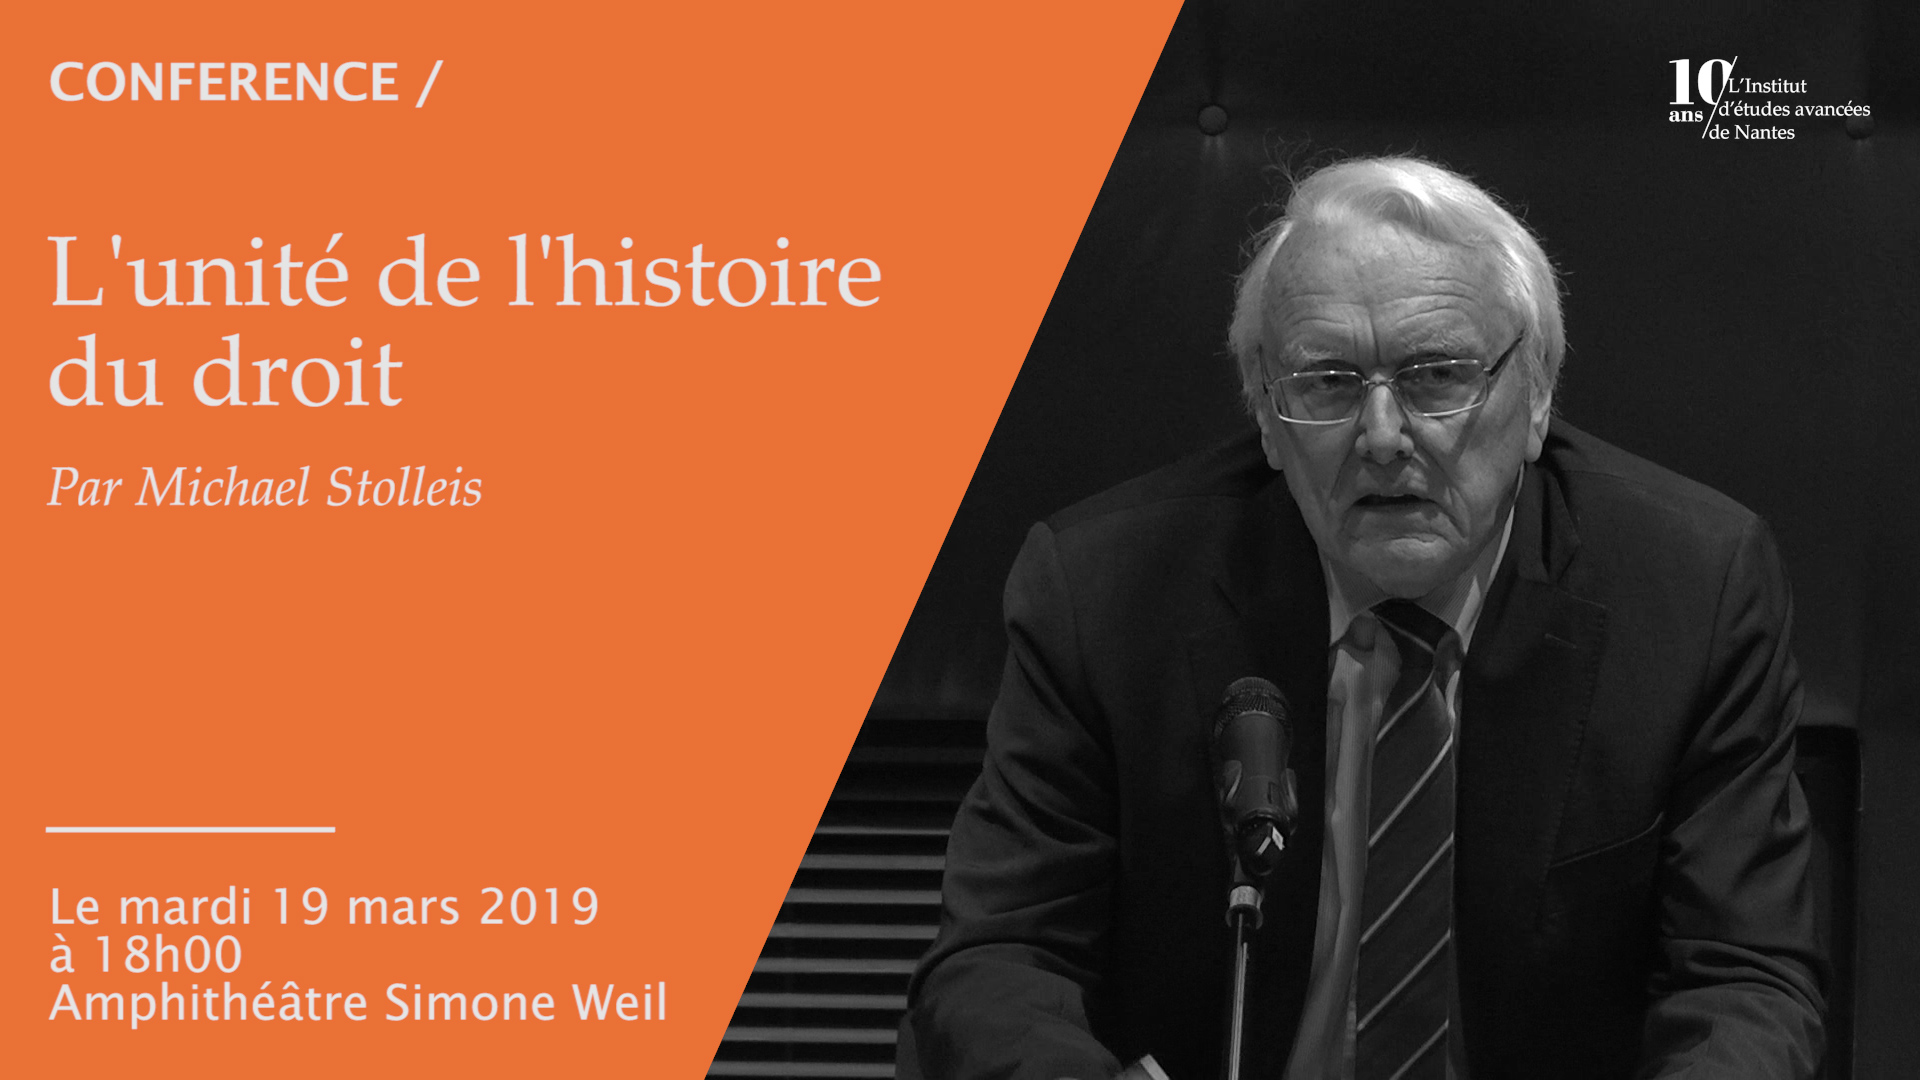 Conférence #199 de Michael Stolleis : " L'unité de l'histoire du droit "